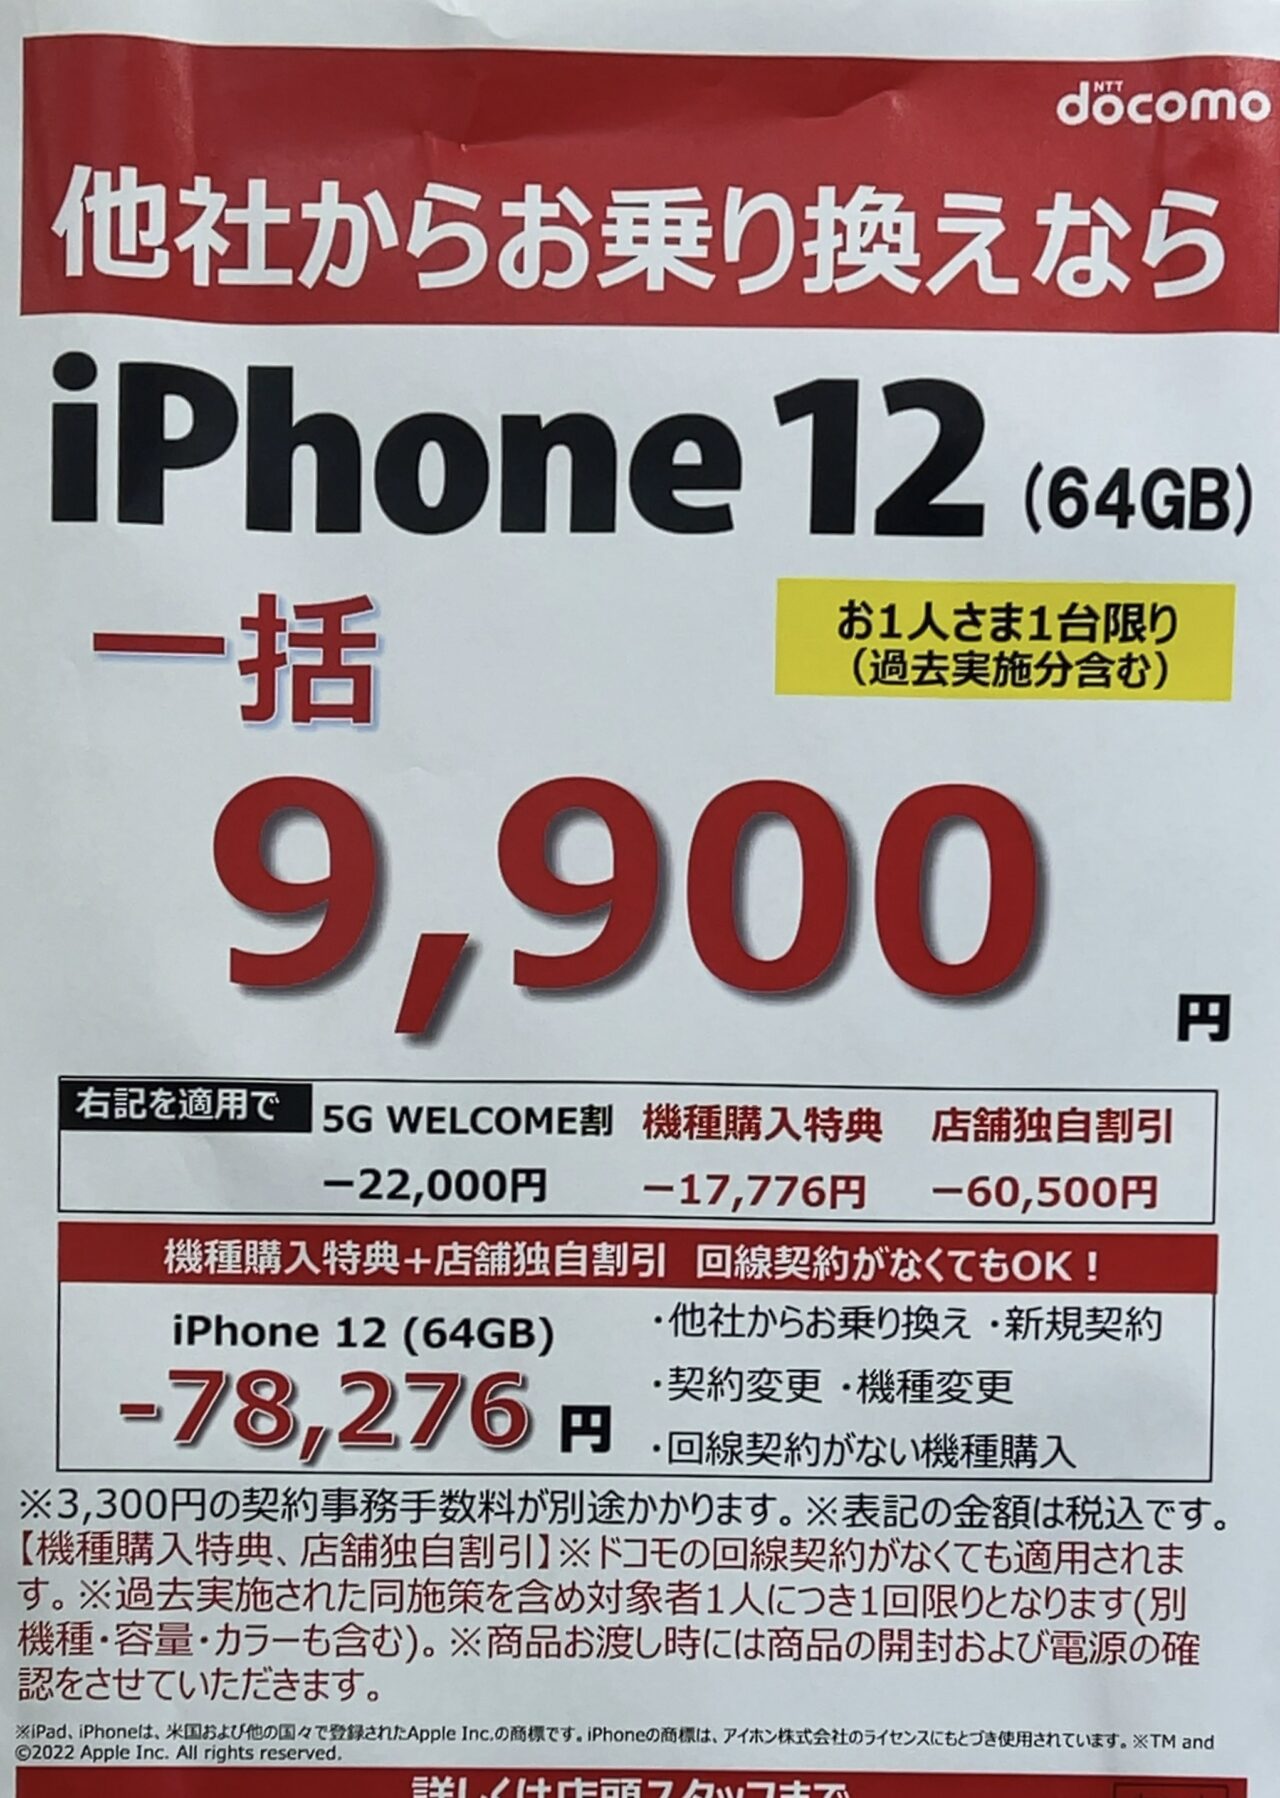 ドコモショップでiPhone 12の64GBがMNPで一括9,900円で案内、機種変更 